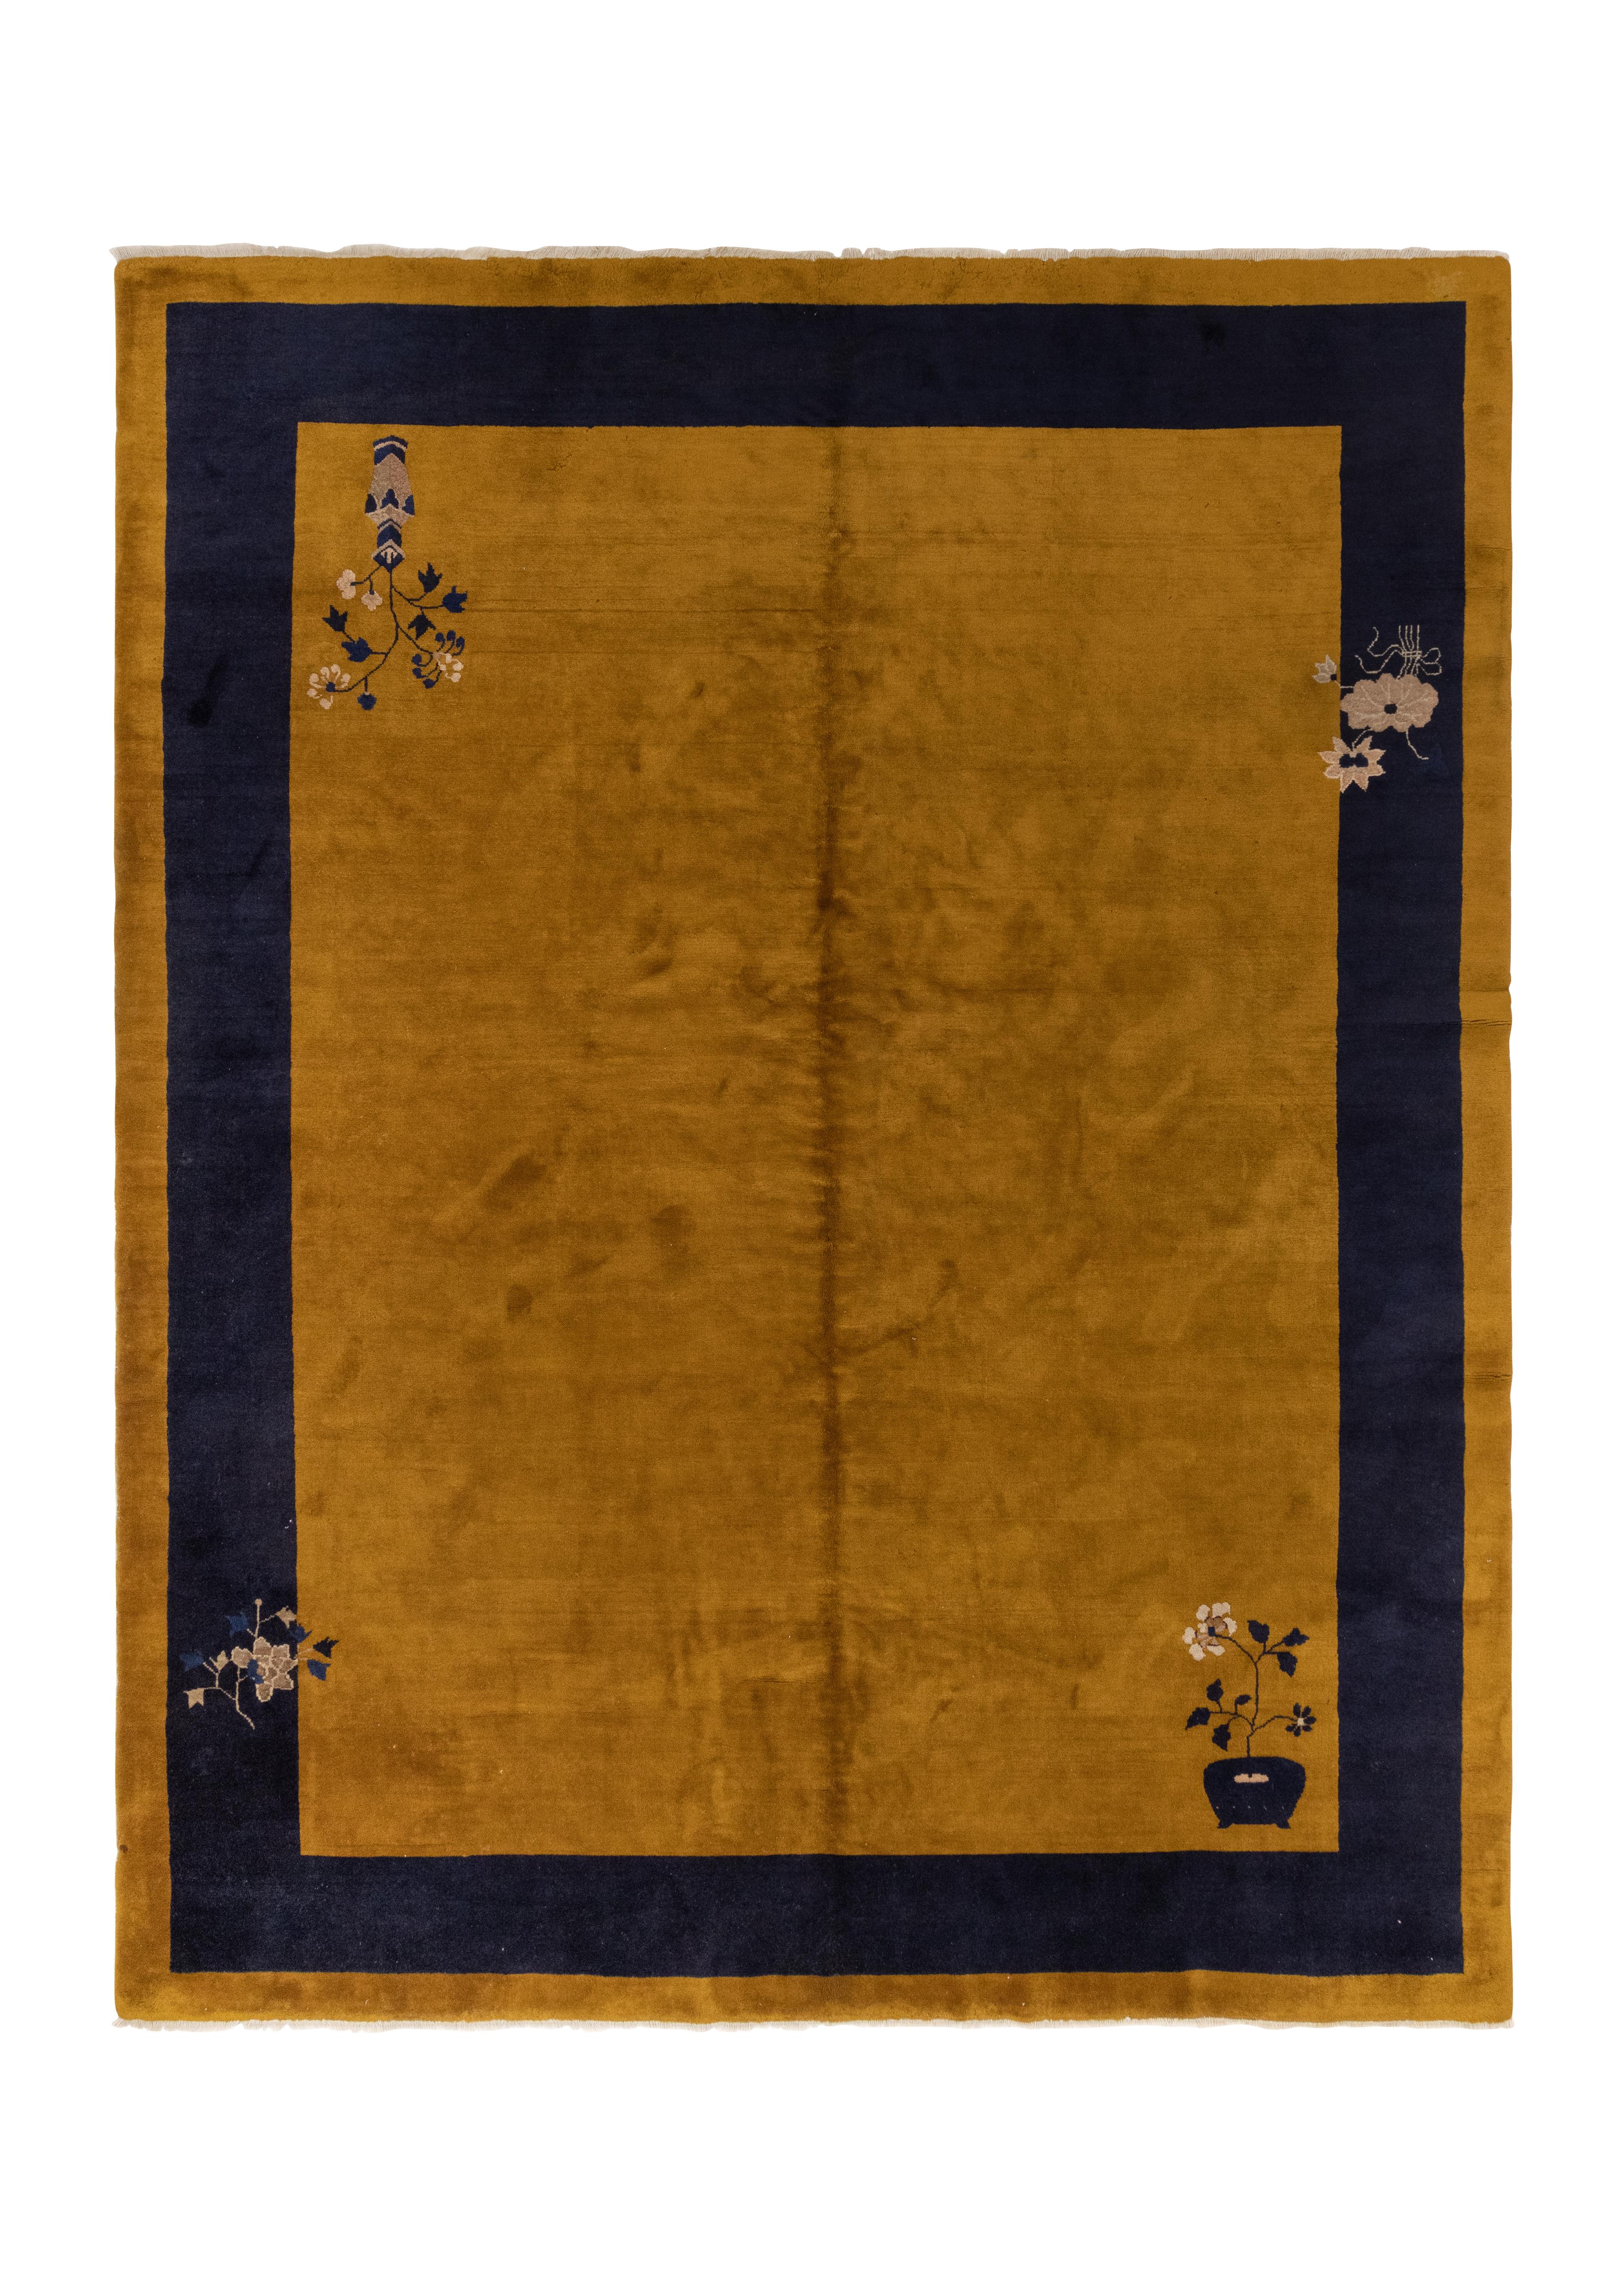 Dies ist eine chinesische Nickels Art Deco Teppich circa 1930er Jahren. Dieser Teppich ist mit einer schönen weichen Wolle gewebt, die ihm einen zusätzlichen Glanz und Patina mit einem sehr einfachen einfachen Muster verleiht.